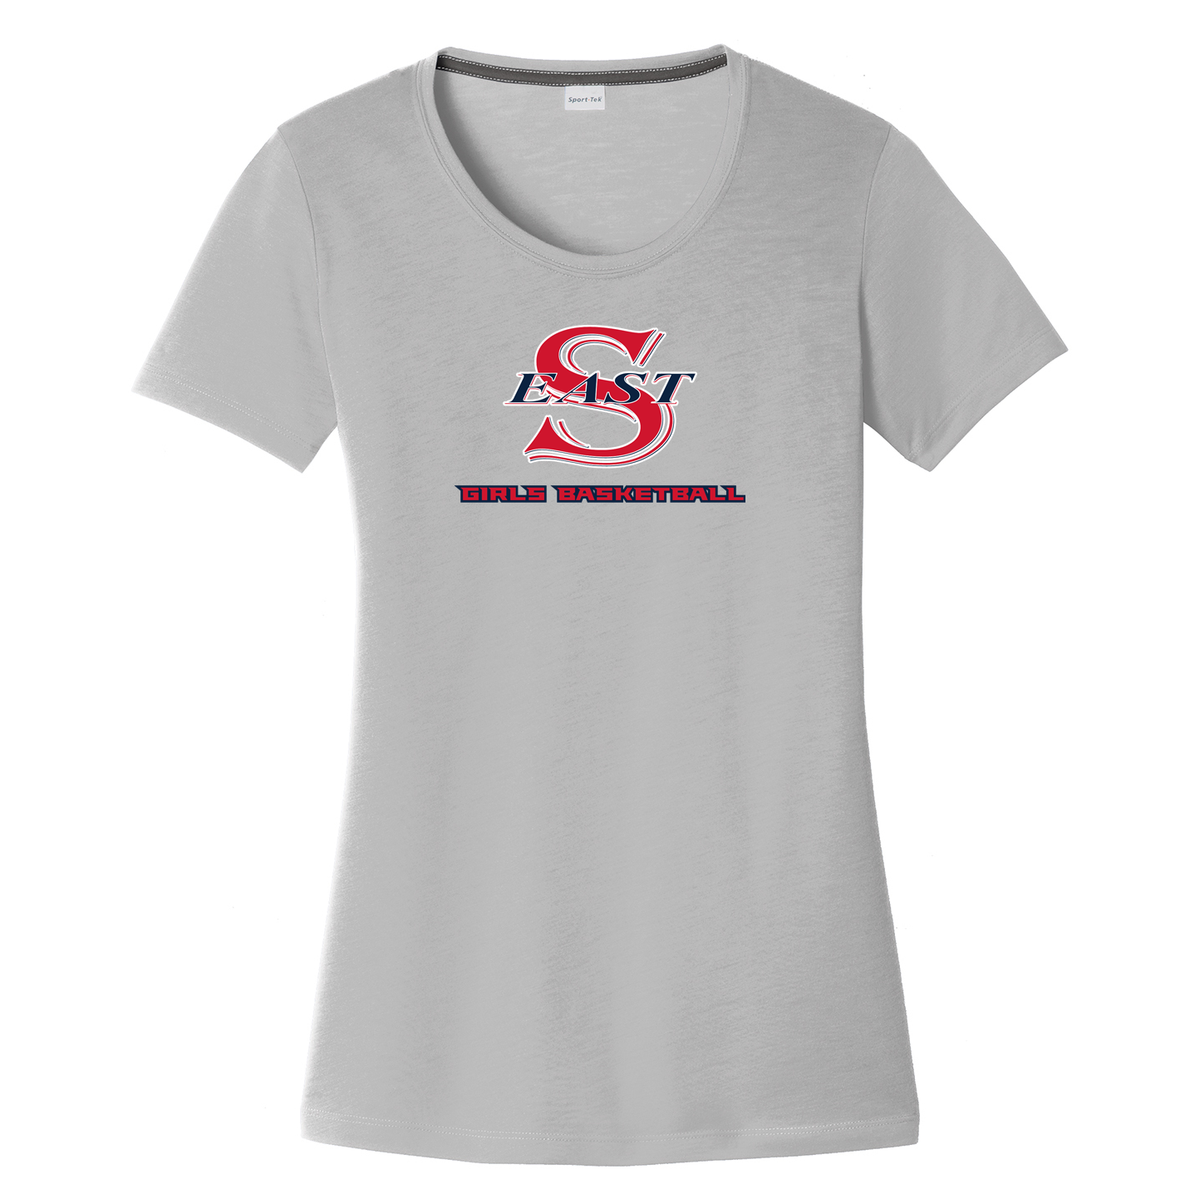 Smithtown East Girls Basketball Women's CottonTouch Performance T-Shirt